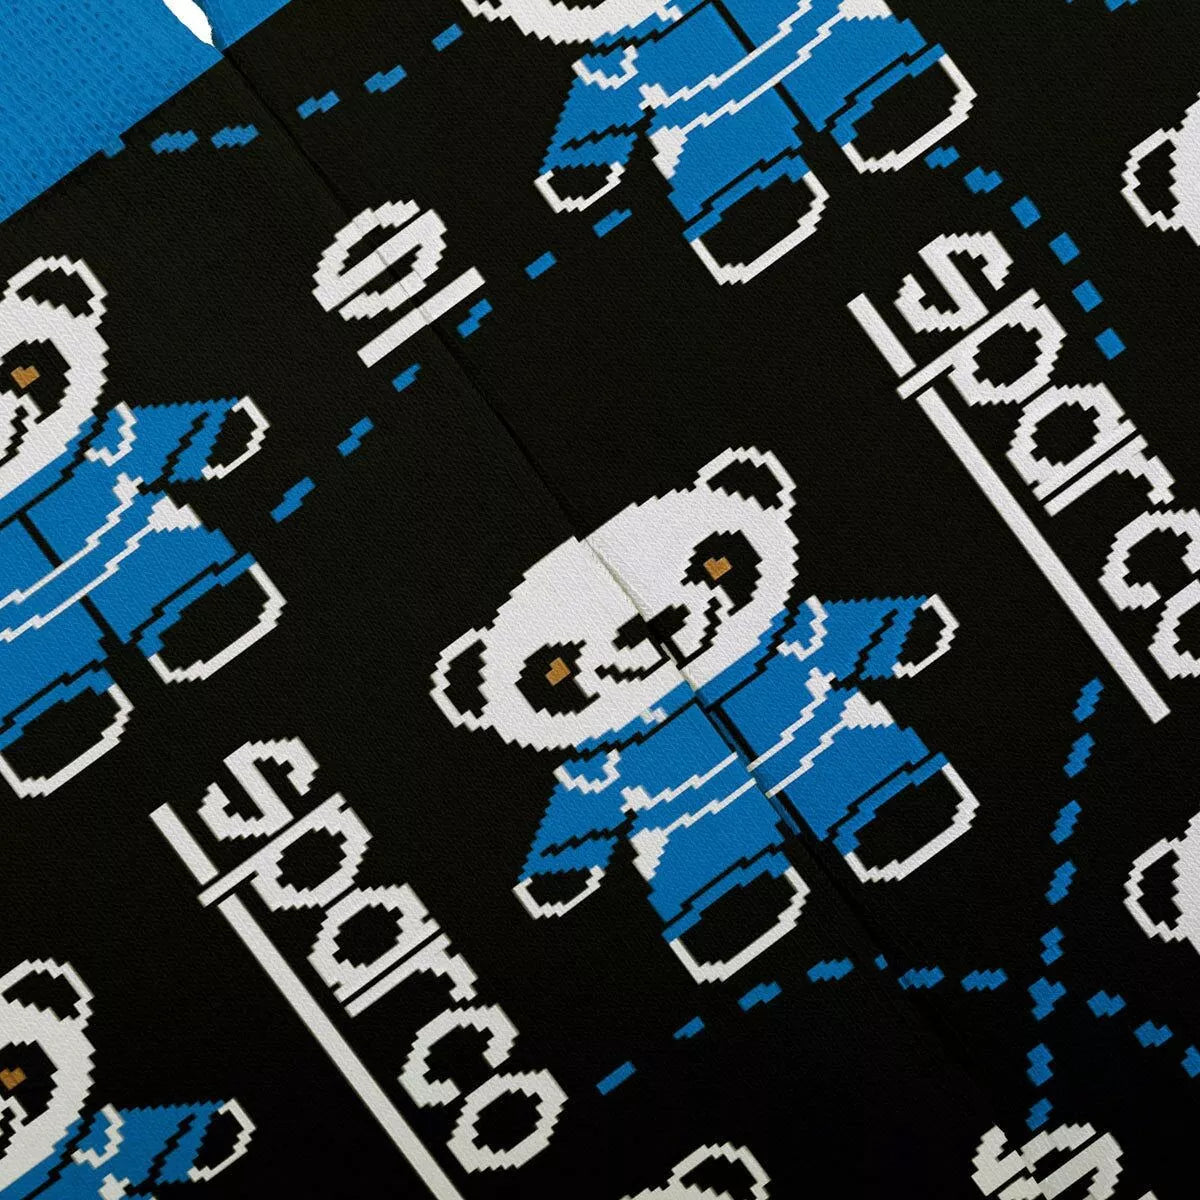 Sparco Panda Socks